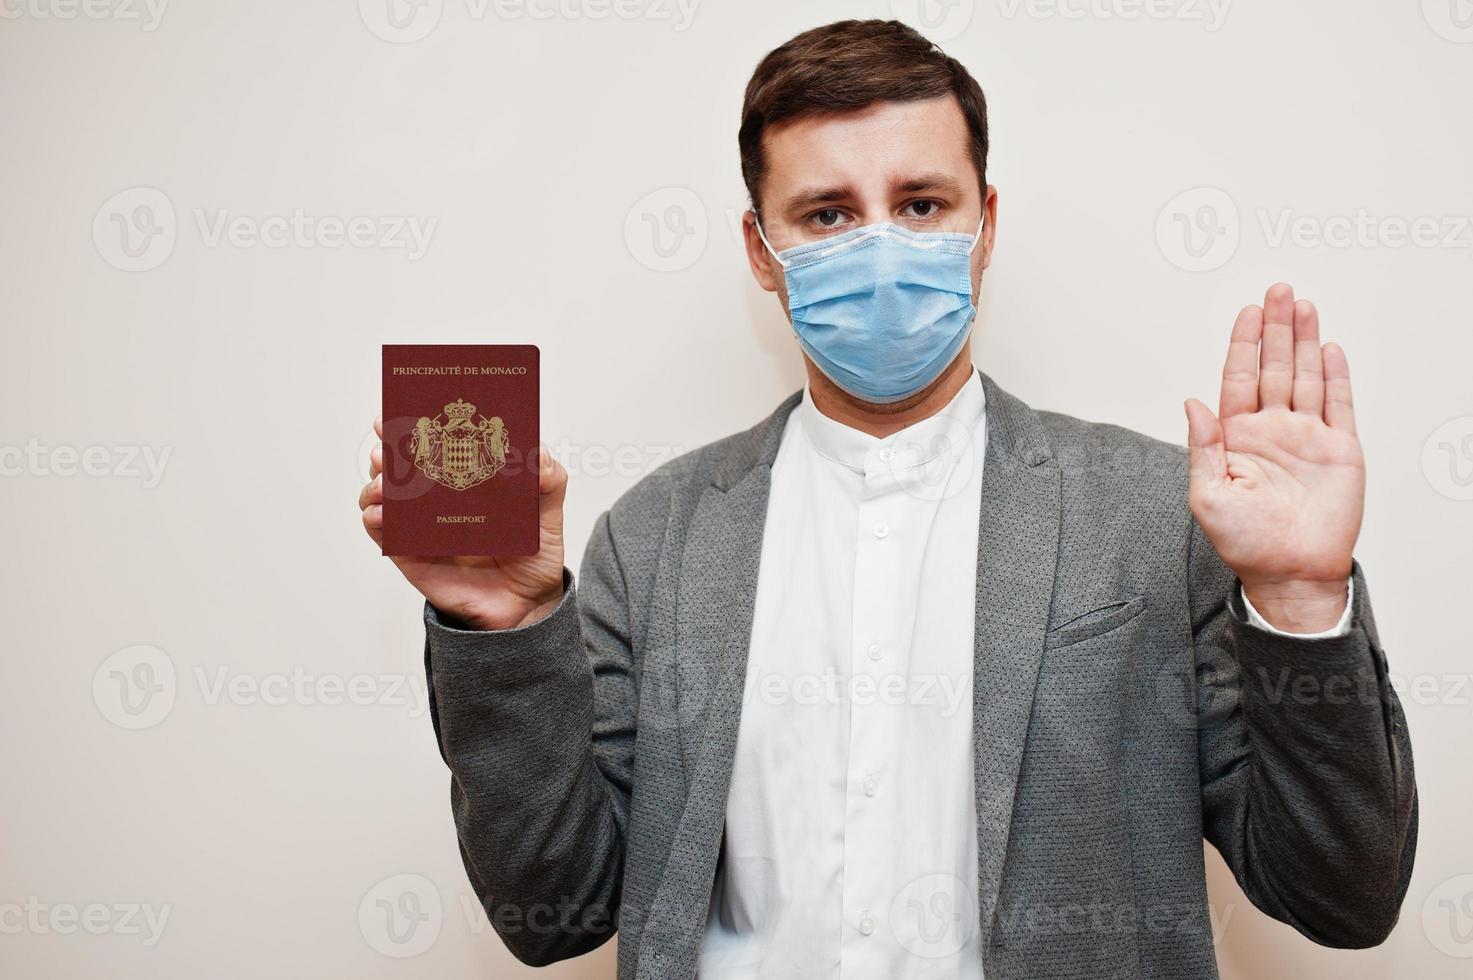 hombre europeo con ropa formal y máscara facial, muestre el pasaporte de mónaco con la mano de la señal de stop. bloqueo de coronavirus en el concepto de país de europa. foto